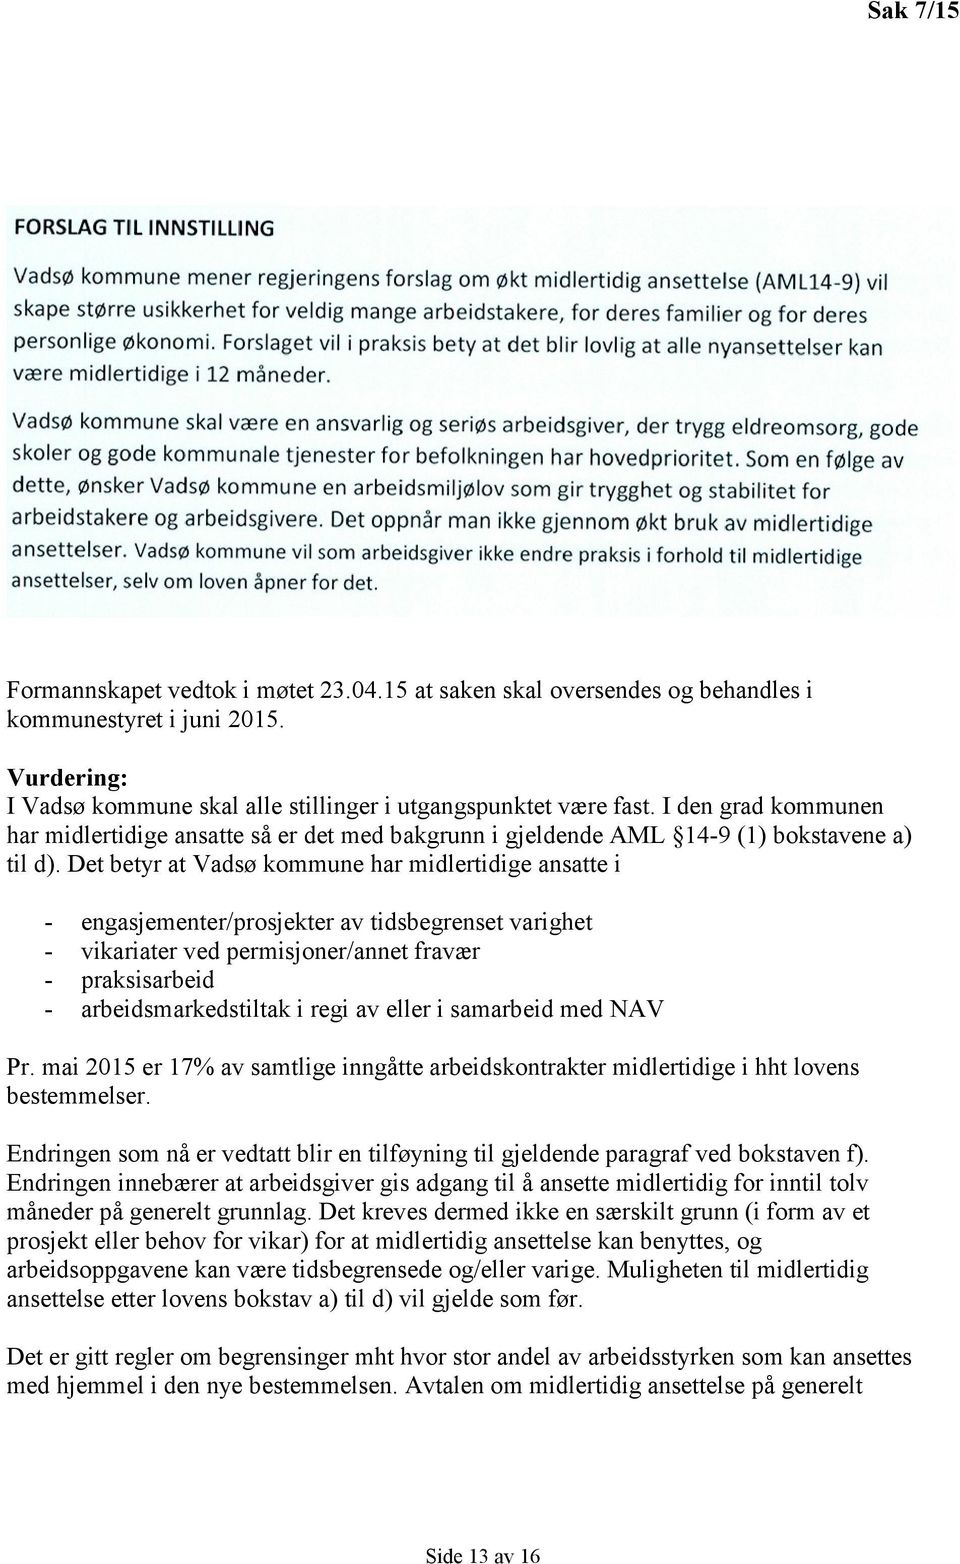 Det betyr at Vadsø kommune har midlertidige ansatte i - engasjementer/prosjekter av tidsbegrenset varighet - vikariater ved permisjoner/annet fravær - praksisarbeid - arbeidsmarkedstiltak i regi av